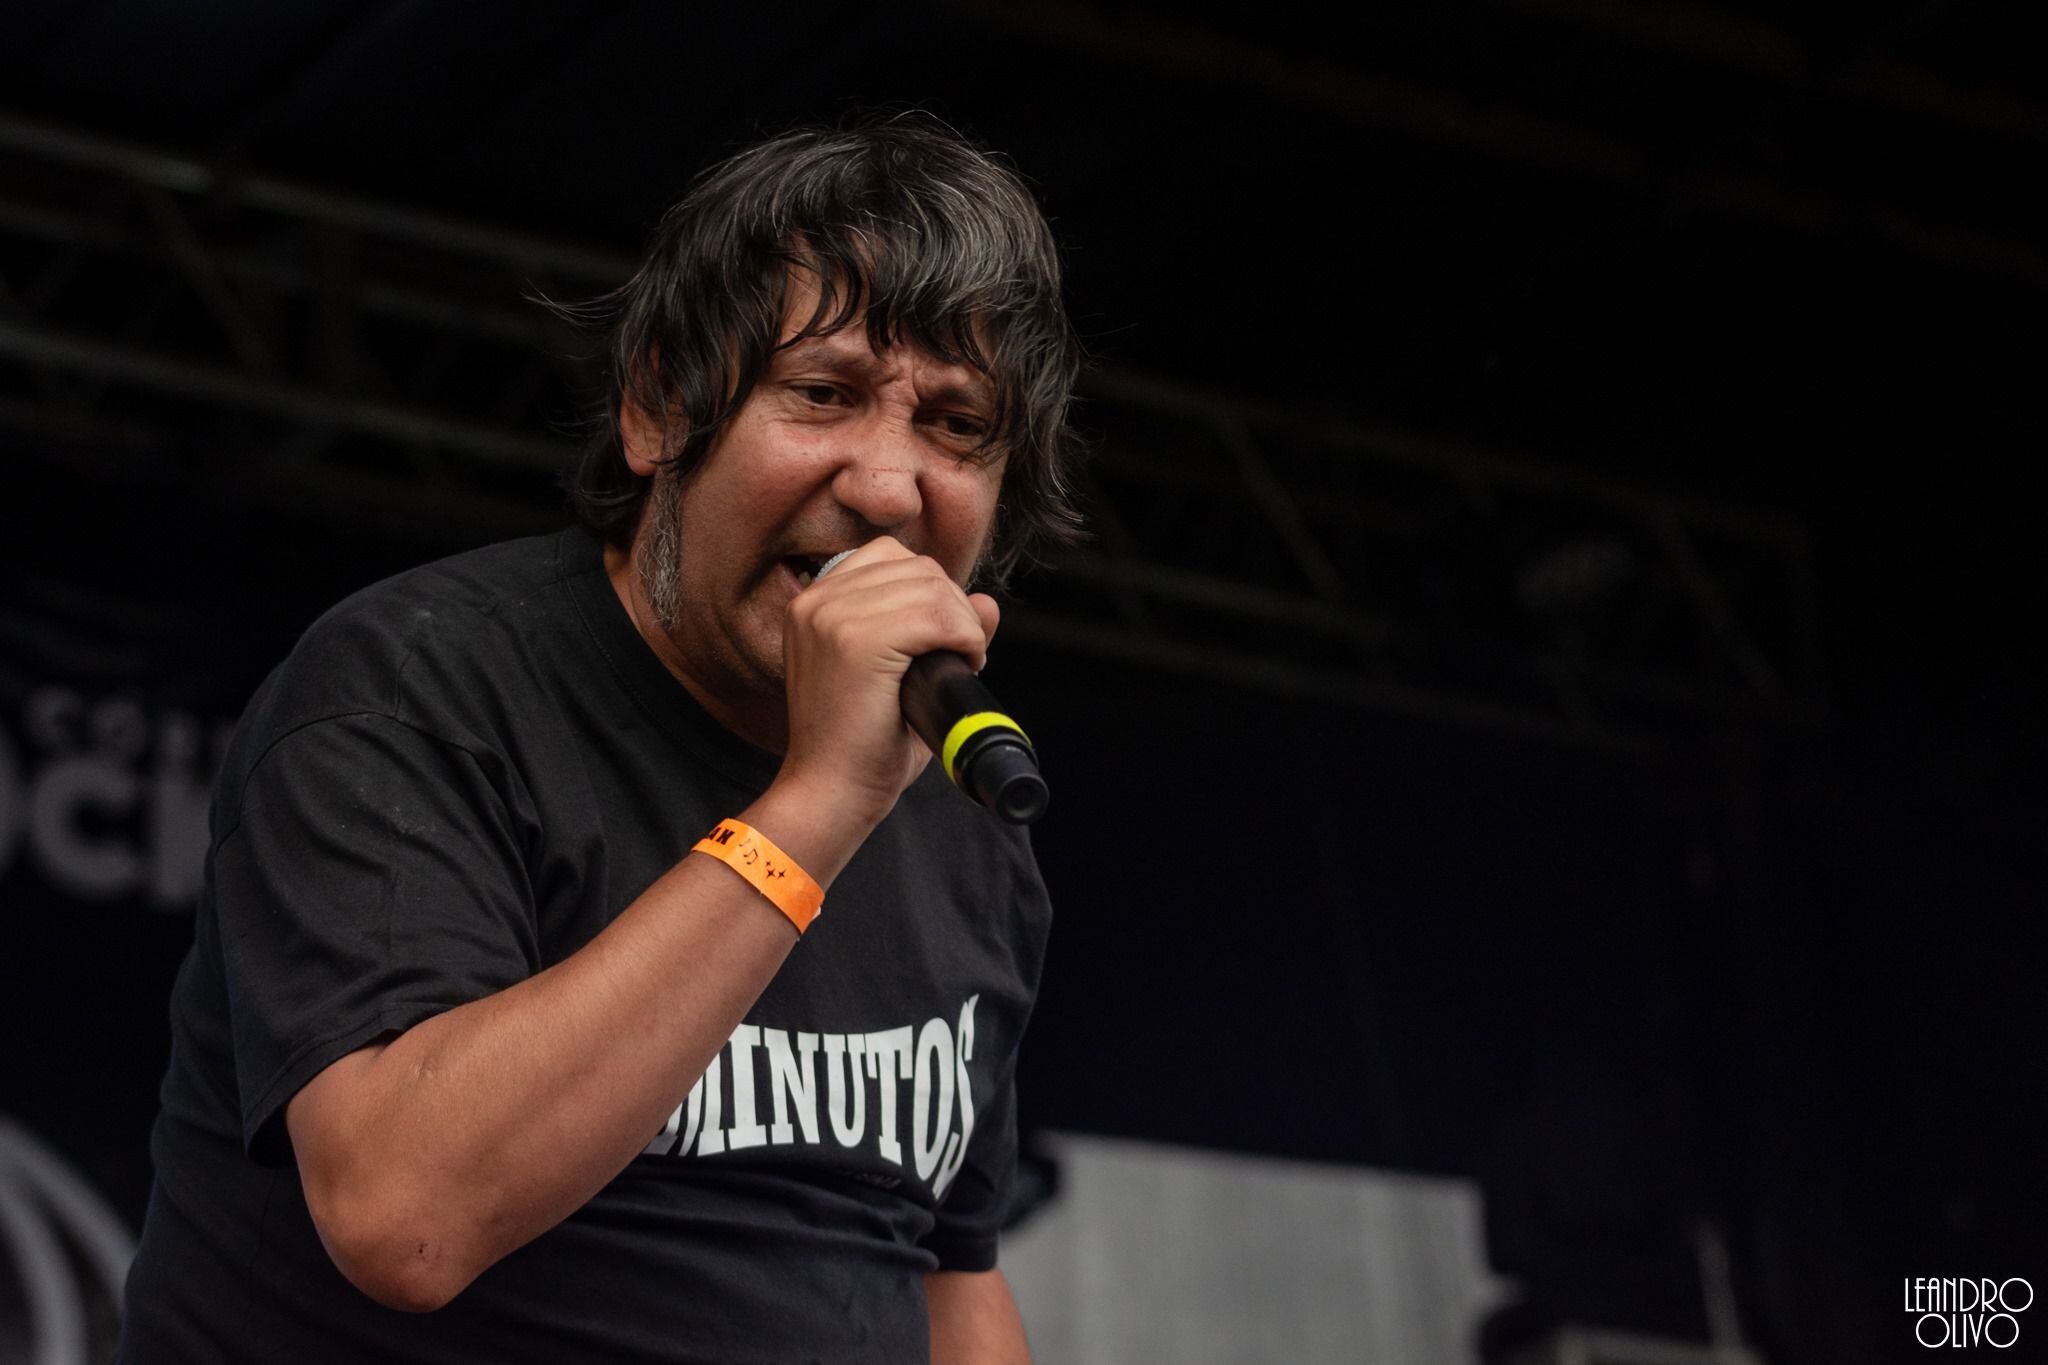 El cantante argentino Walter Velázquez, El Mosca, de la banda 2 Minutos no pudo ingresar a Costa Rica debido al comportamiento que habría mostrado en el avión. 